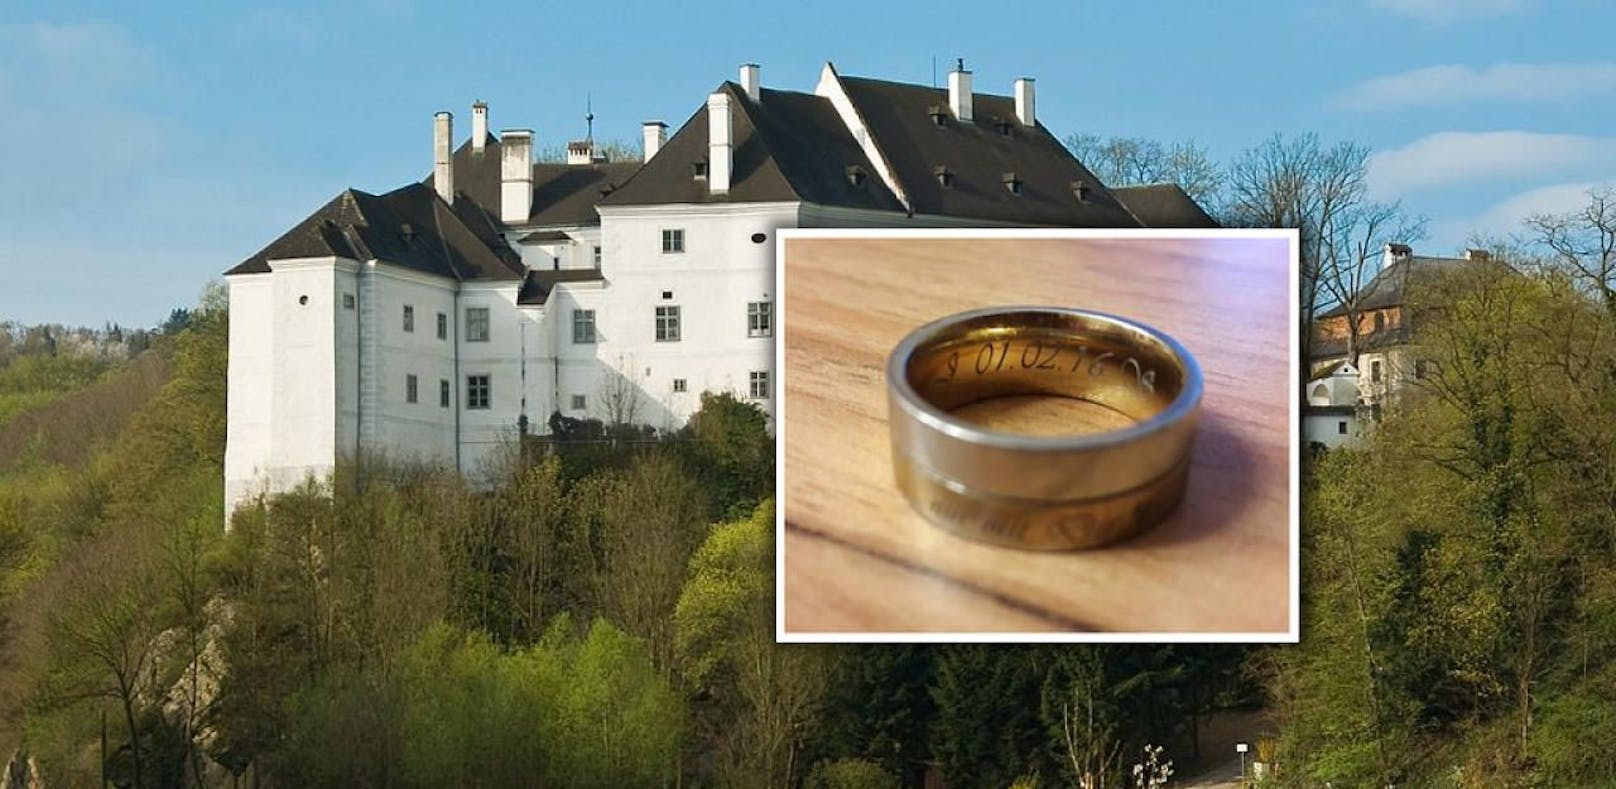 Besitzerin gesucht: Ehering in Schloss gefunden